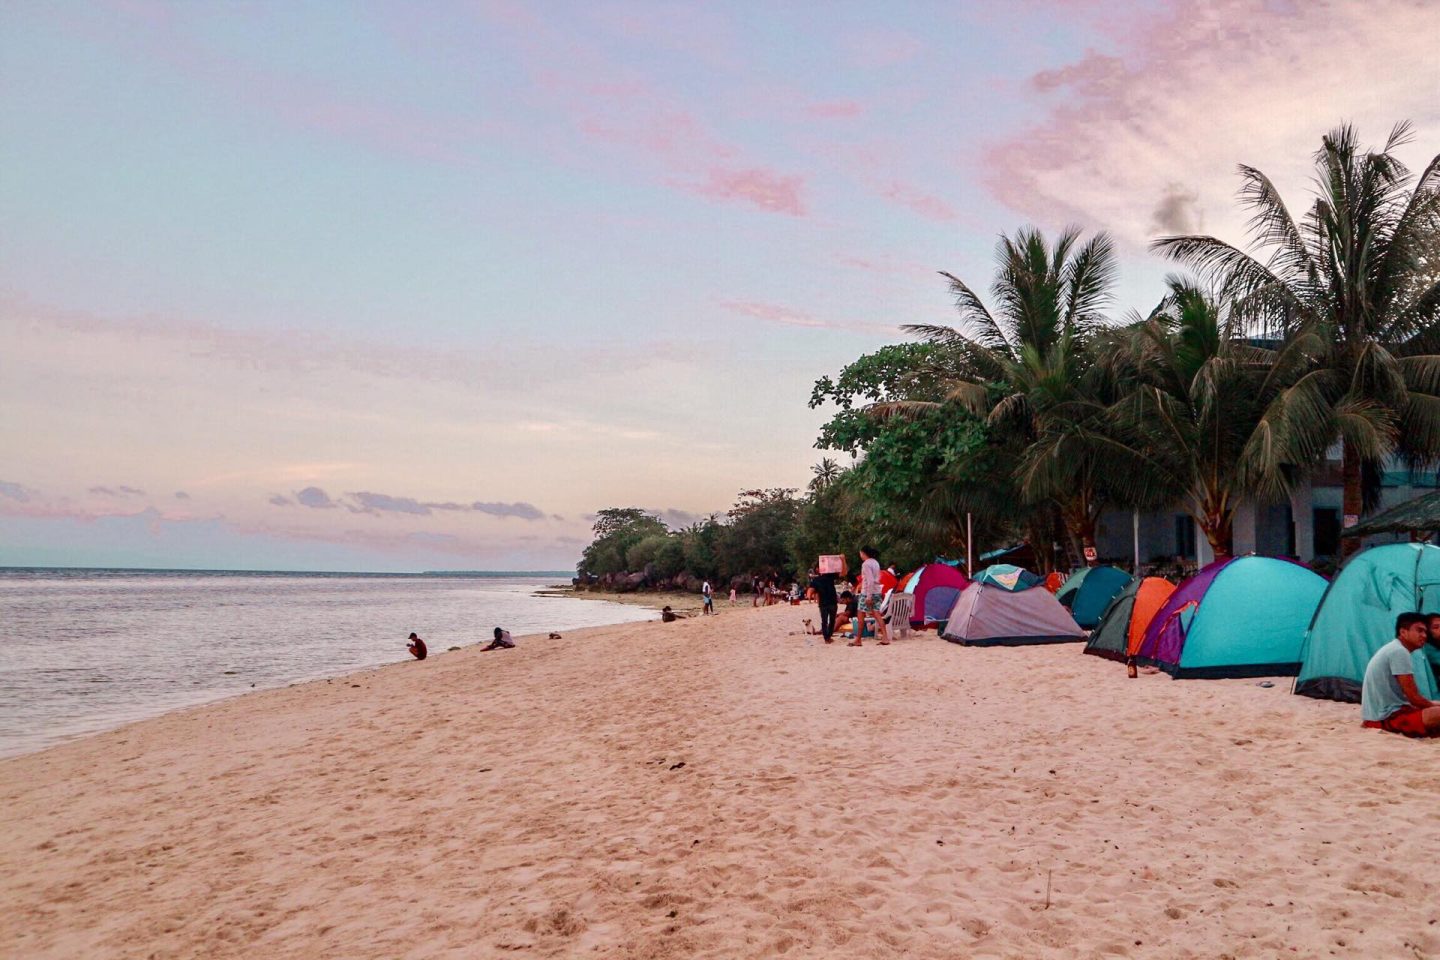 Camping at Lambug Beach in Badian